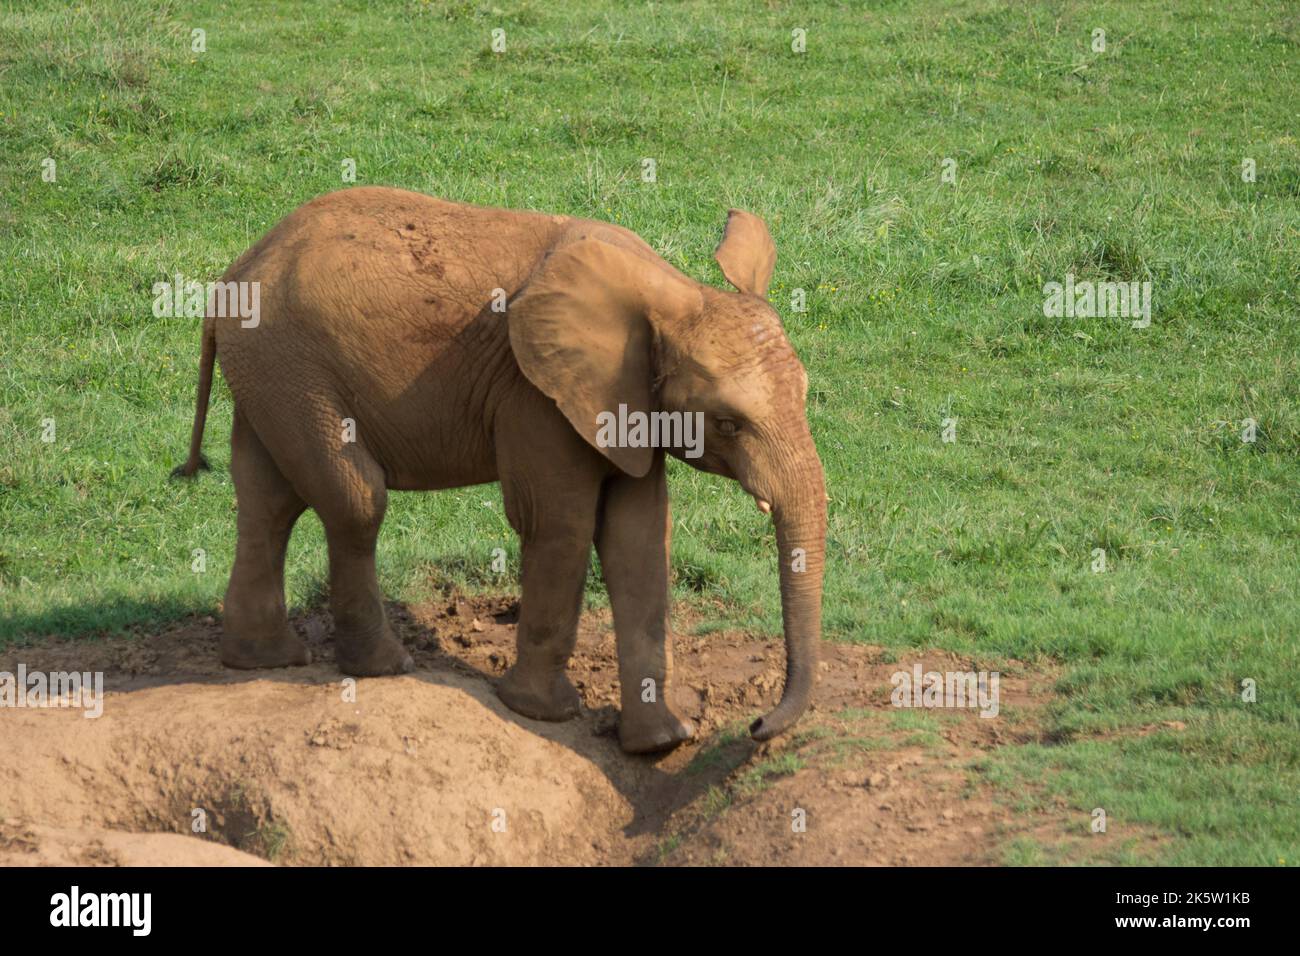 l'eau potable de l'éléphant brun d'un étang dans le sol avec son tronc Banque D'Images